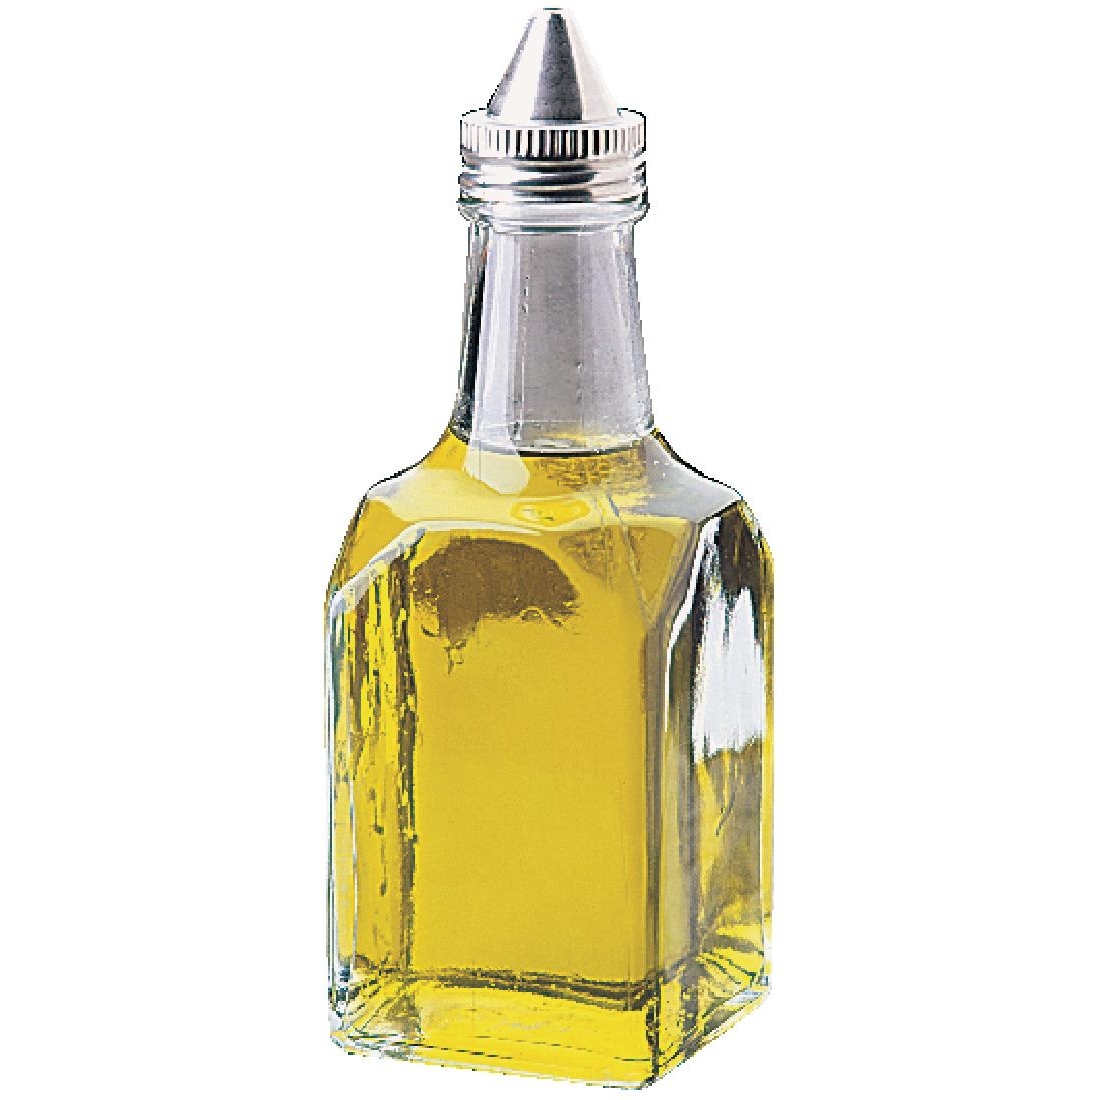 Oil and Vinegar Cruets